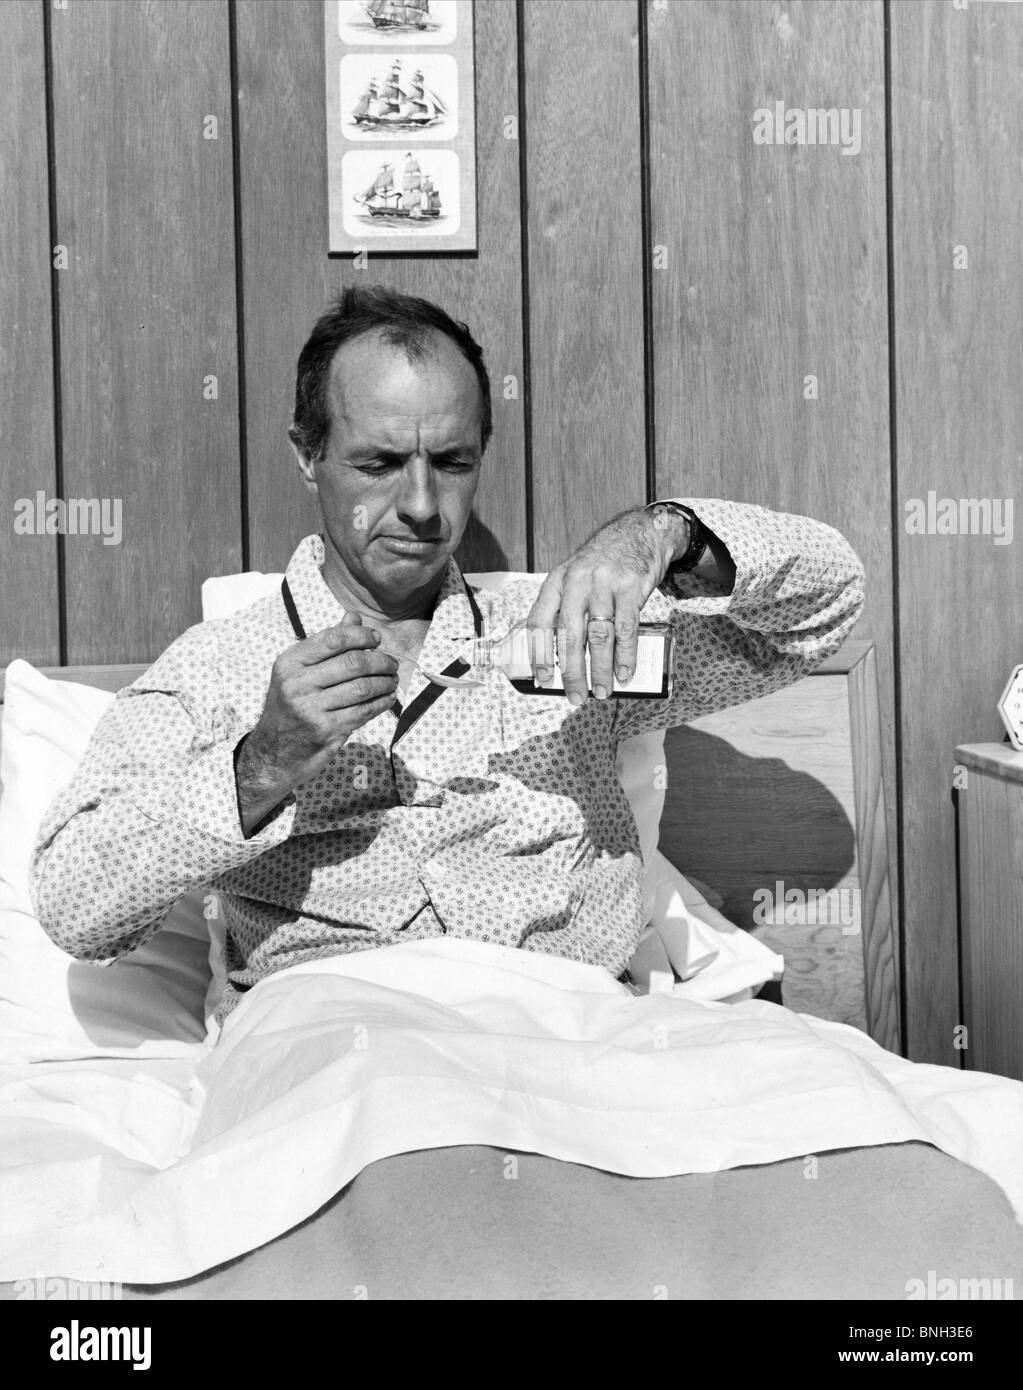 Reifer Mann im Bett Gießen Medizin in einem Löffel Stockfoto